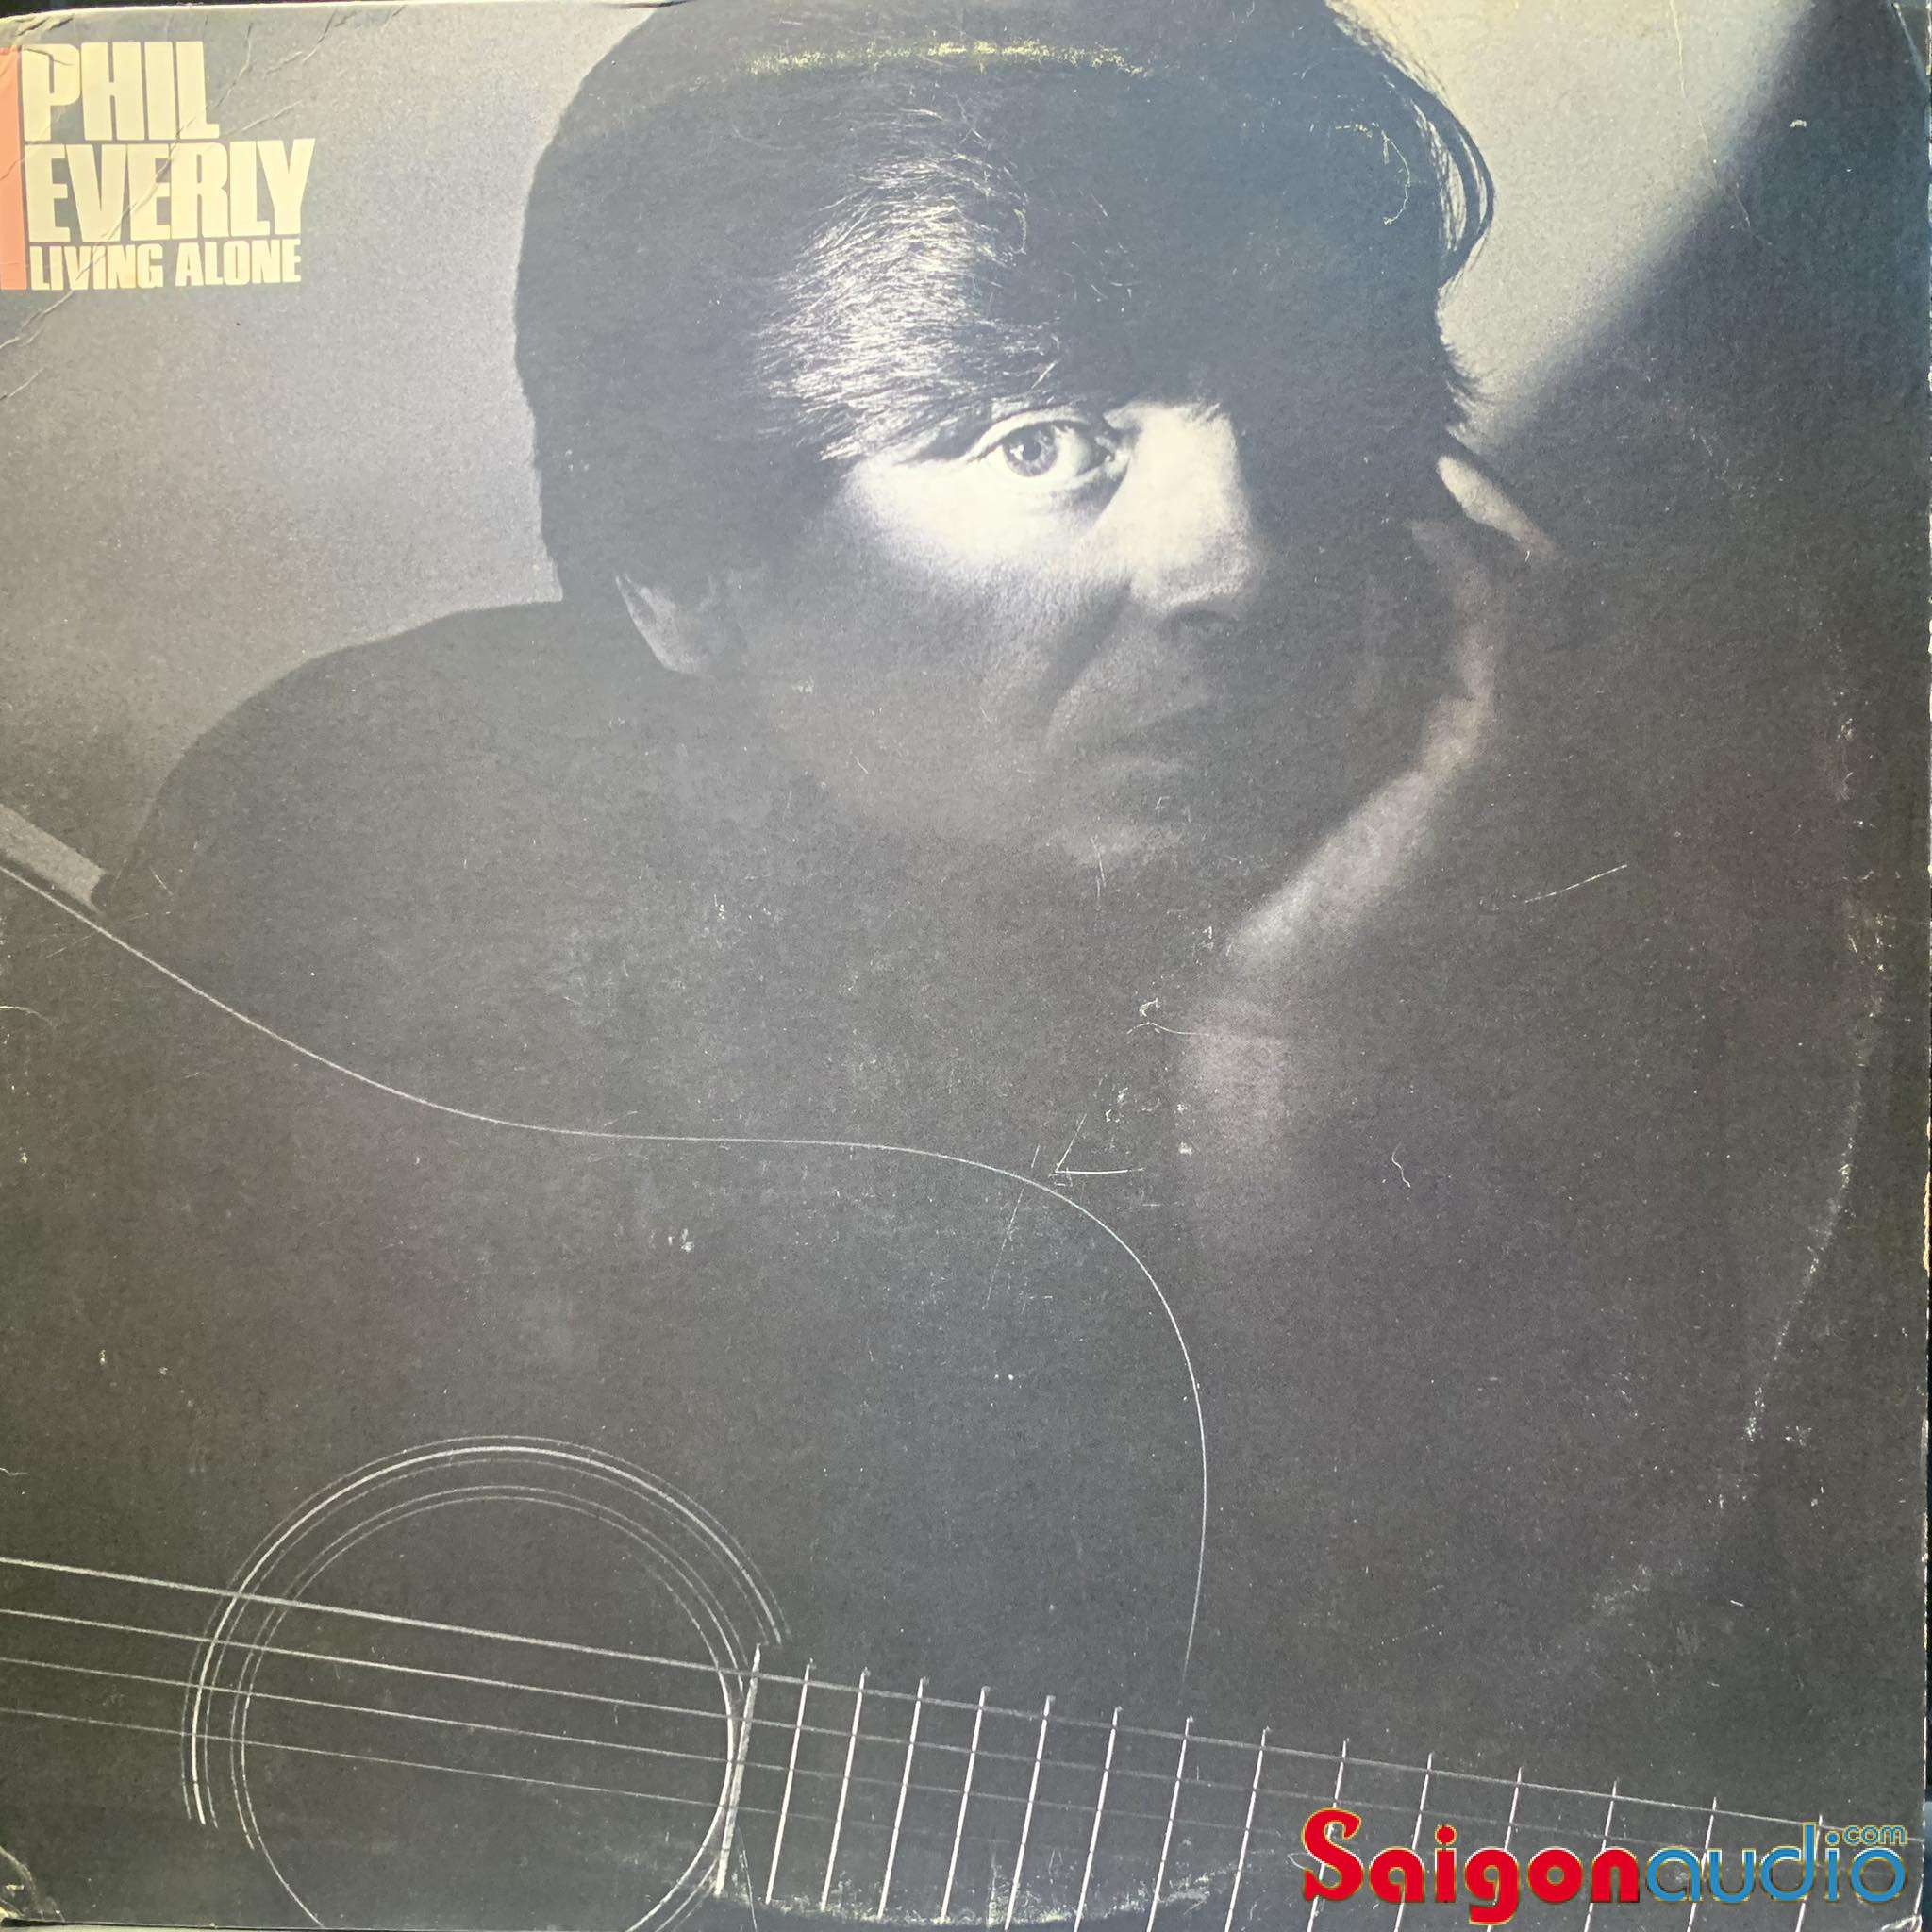 Đĩa than Phil Everly – Living Alone | LP Vinyl Records